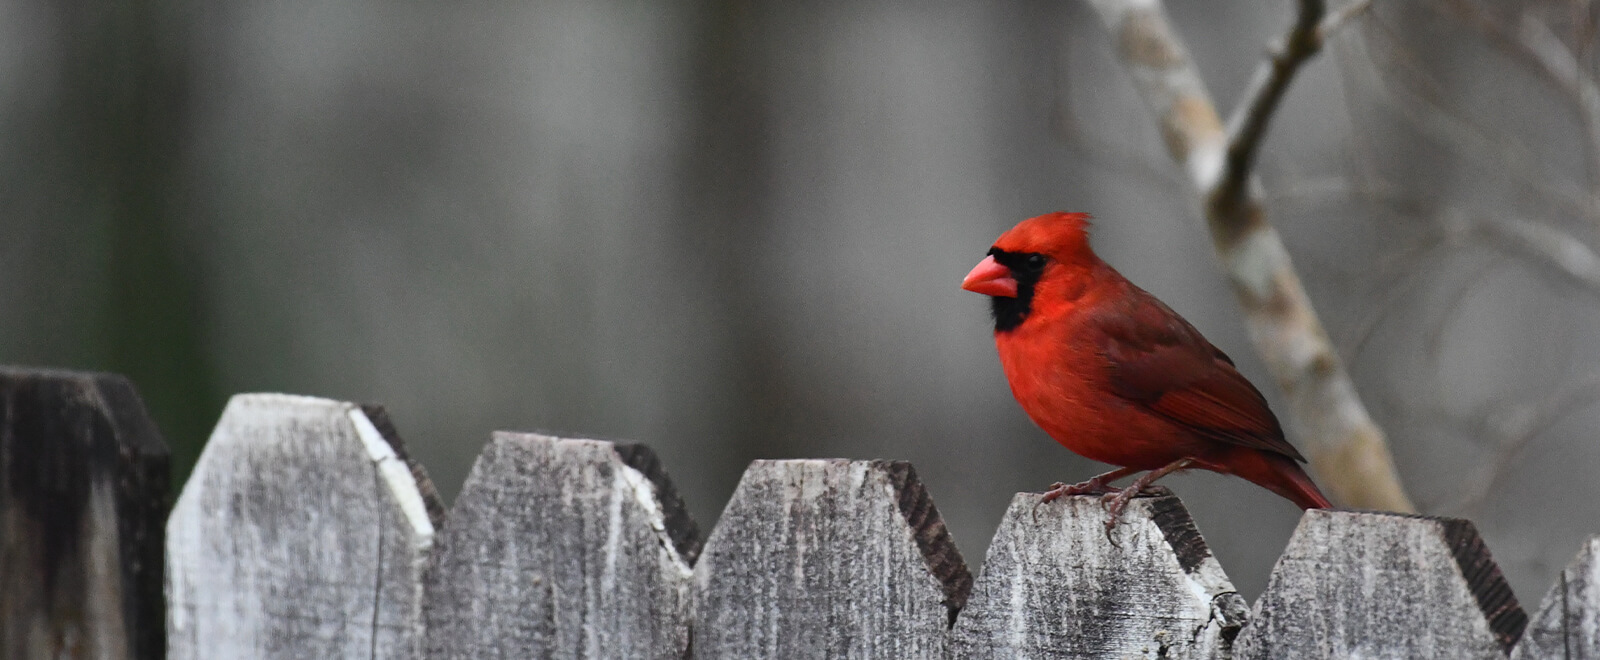 Cardinal on fence